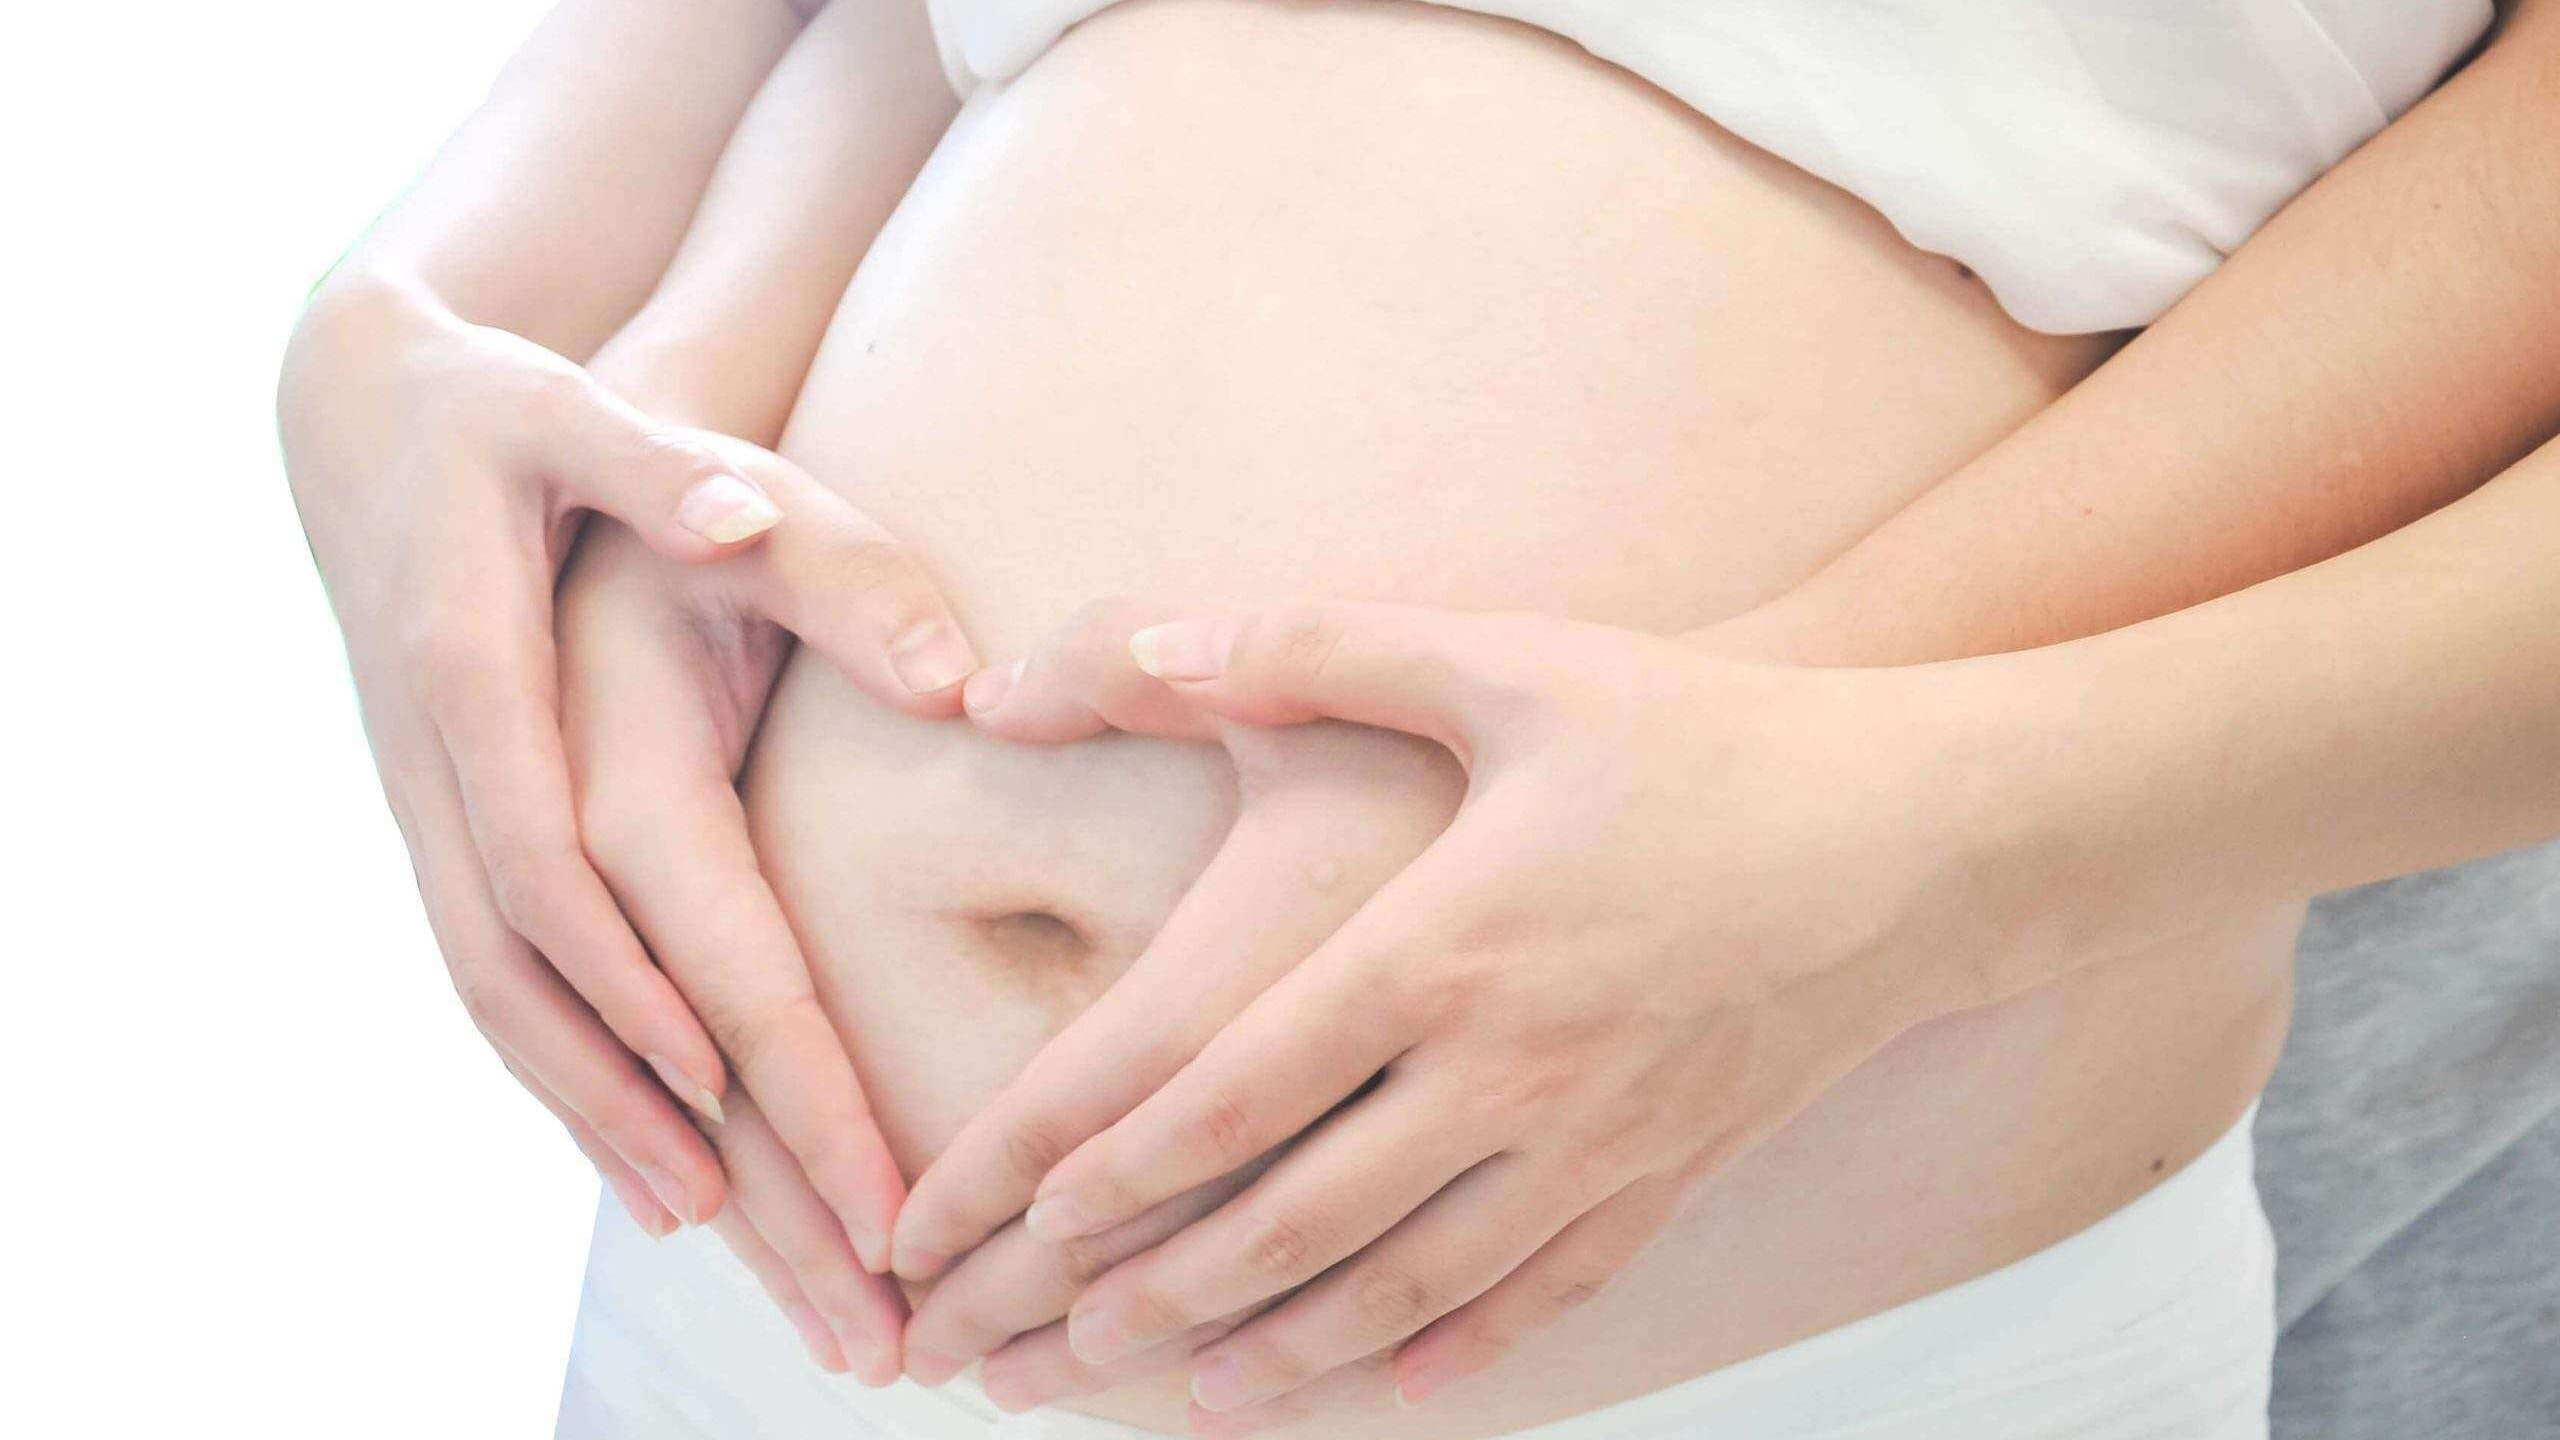 Hình dáng bụng bầu có thể được sử dụng để đoán định giới tính thai nhi không?

